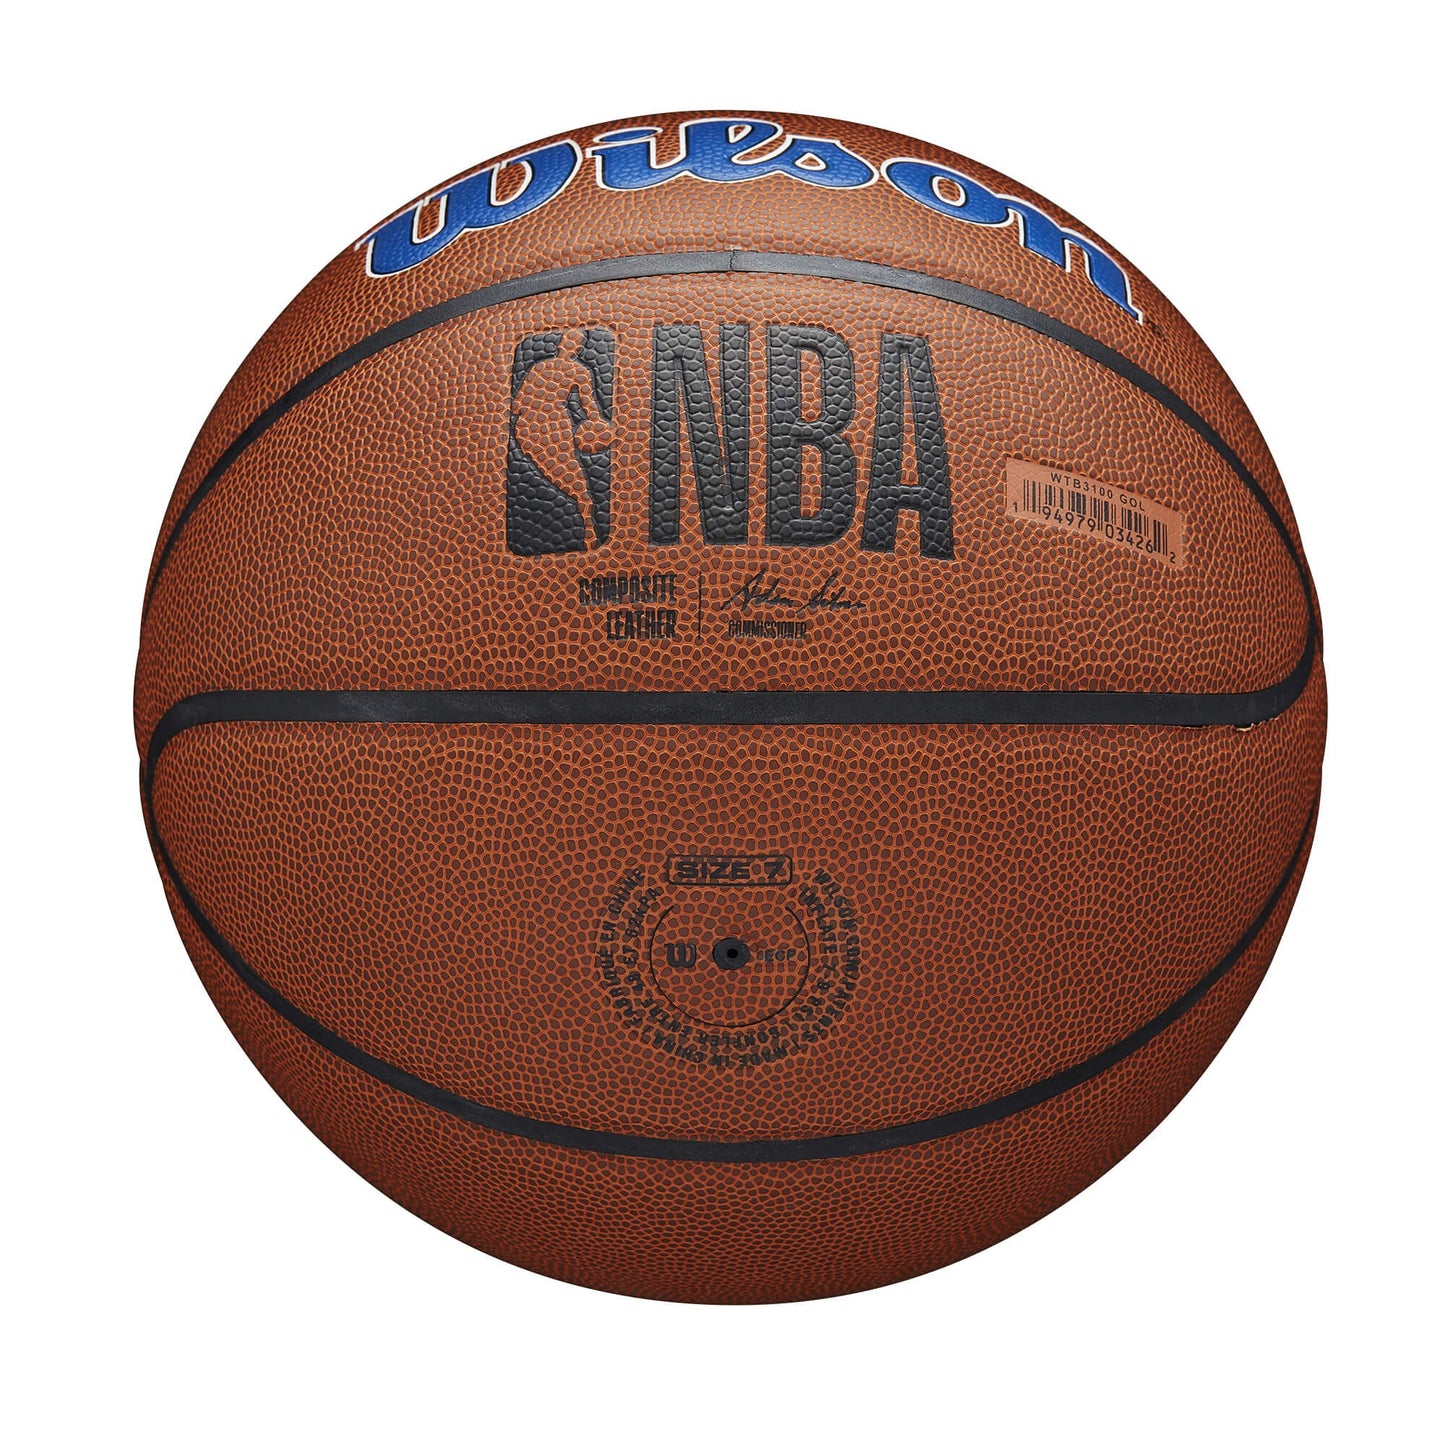 Wilson NBA Team Alliance Composite Basketball Golden State Warriors (sz. 7)